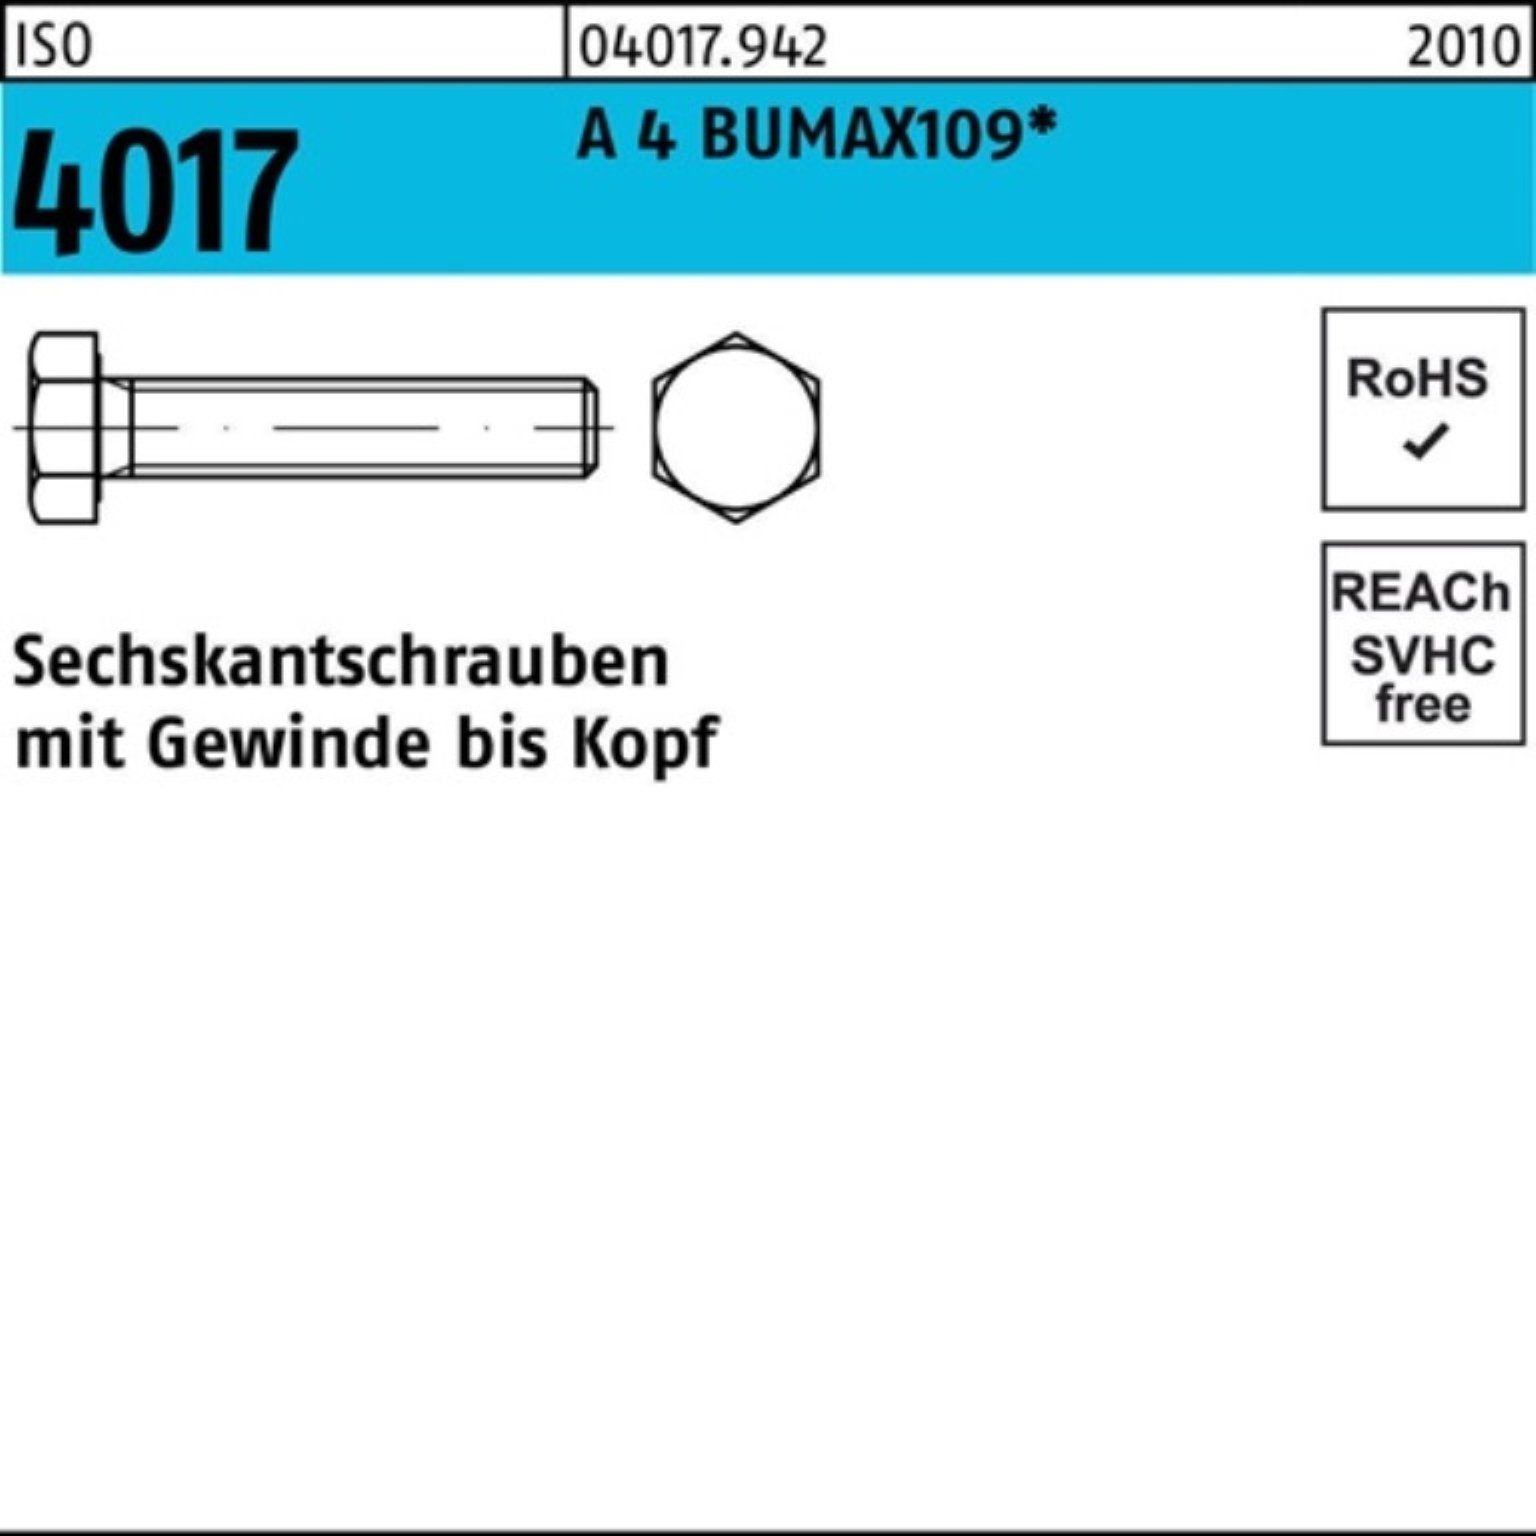 Bufab Sechskantschraube 100er Pack Sechskantschraube ISO 4017 VG M8x 30 A 4 BUMAX109 50 Stück | Schrauben